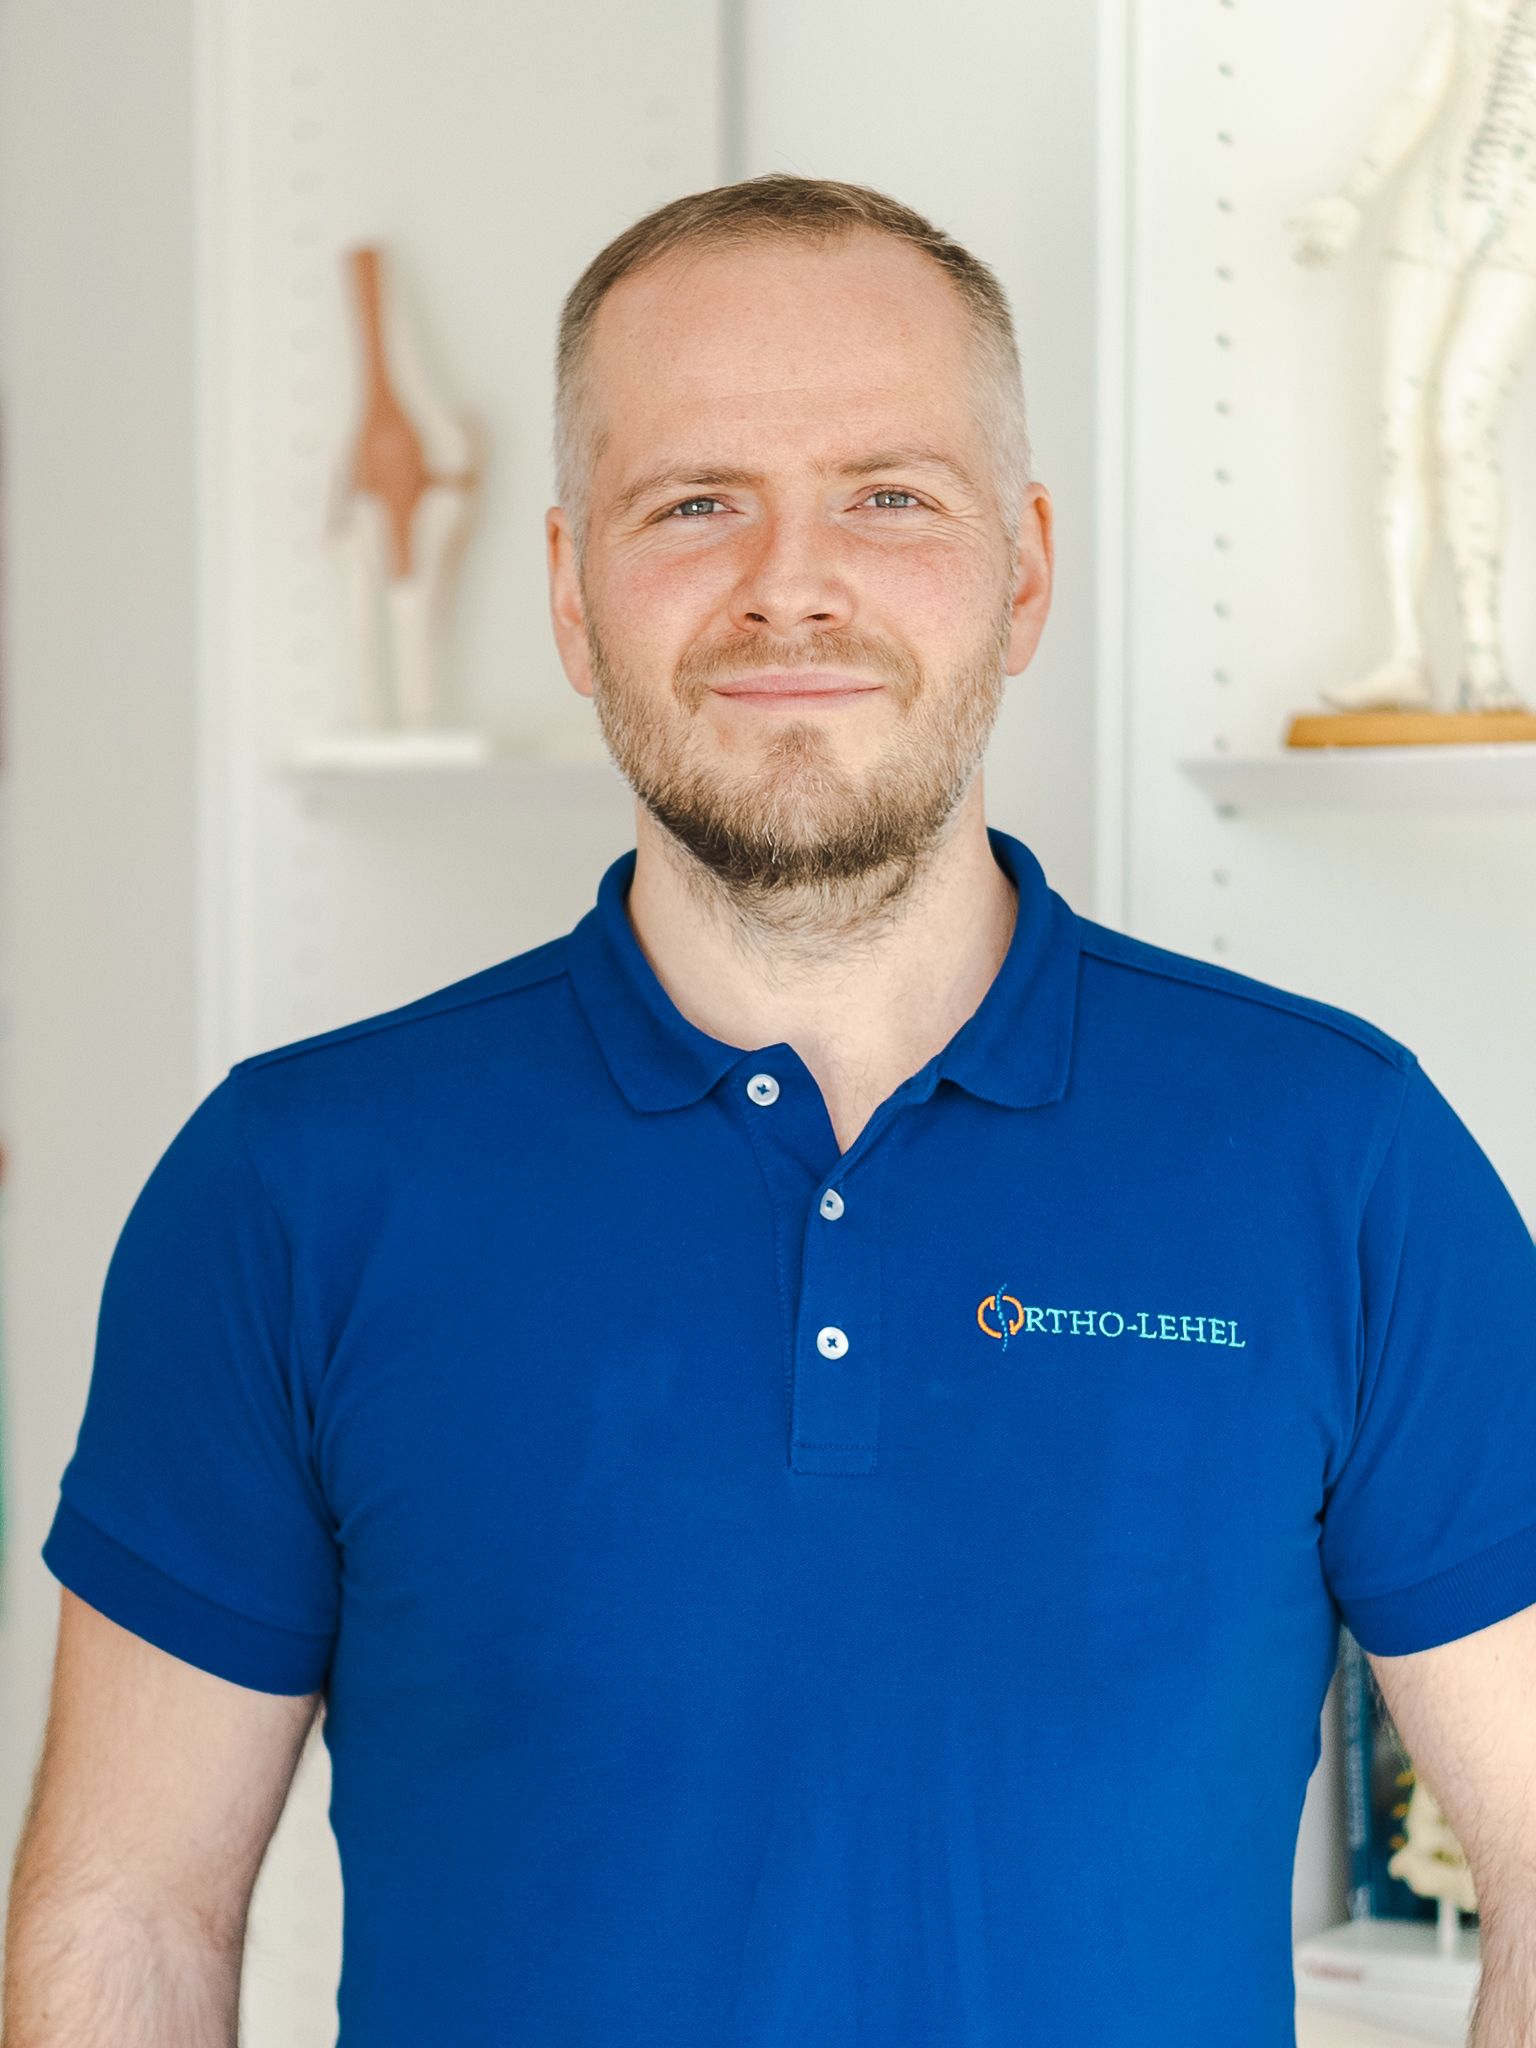 Orthopäde München, ein professioneller Orthopäde namens Dr. Michael Wunderlich in einem blauen Hemd mit einem Logo von Ortho-Lehel auf der linken Seite.